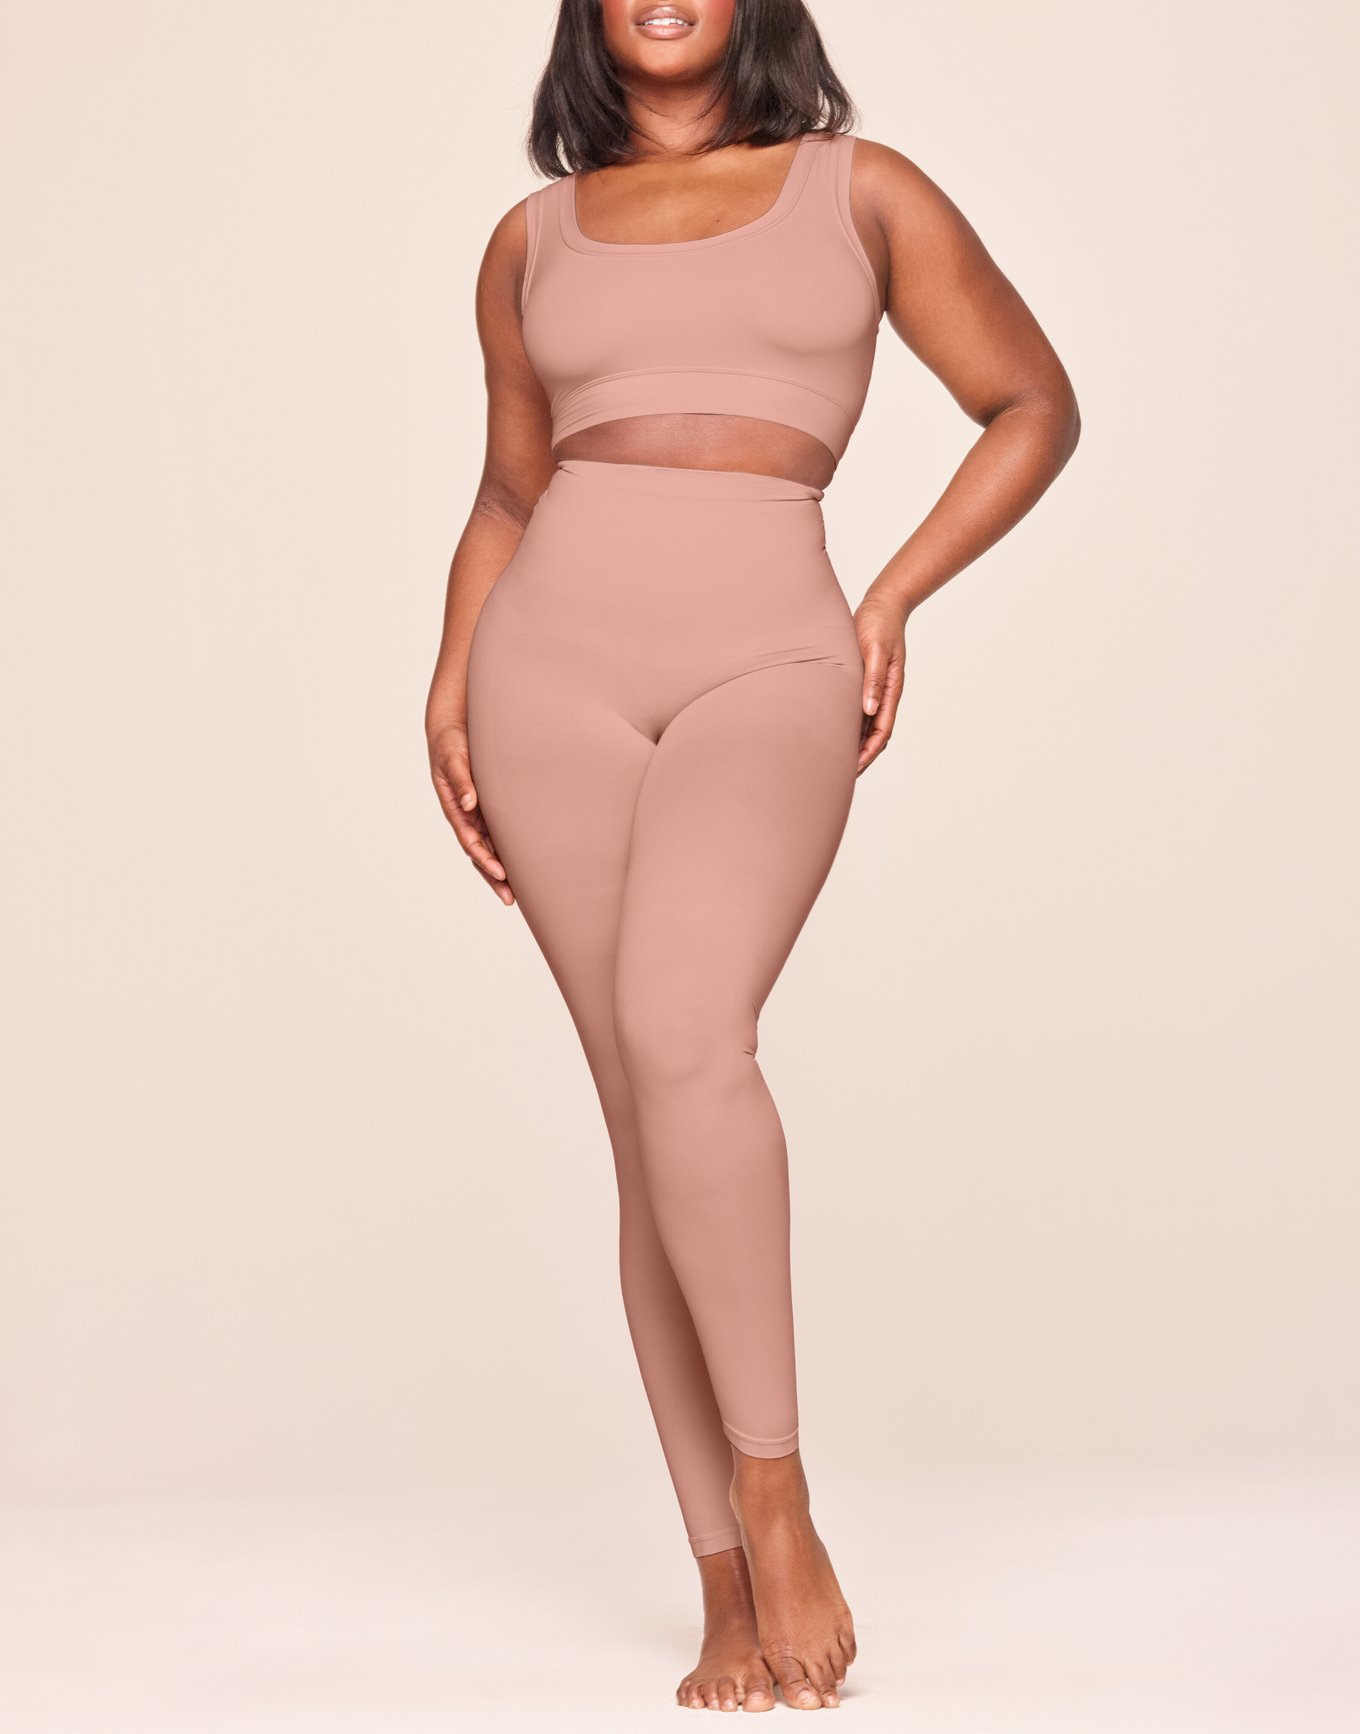 Pink Swirl Yoga Full Length Leggings – Faith Hope Love Boutique